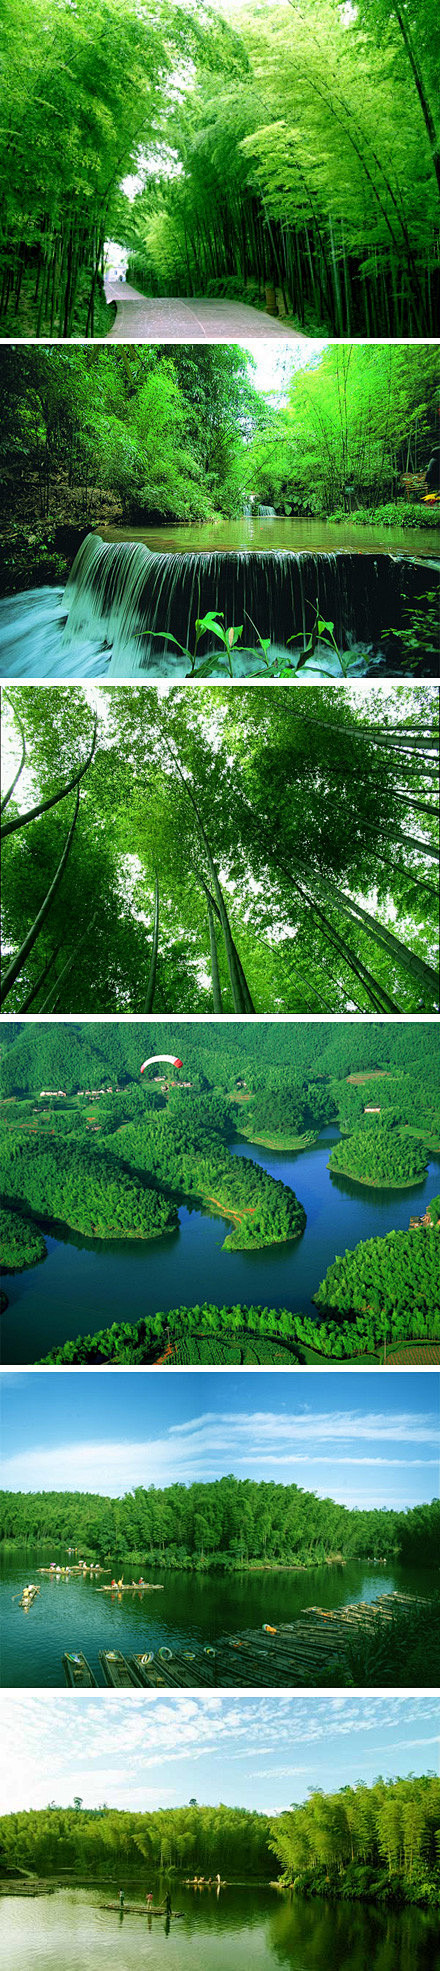 宜宾竹海历史悠久的人文景观最大原始绿竹公园植被覆盖